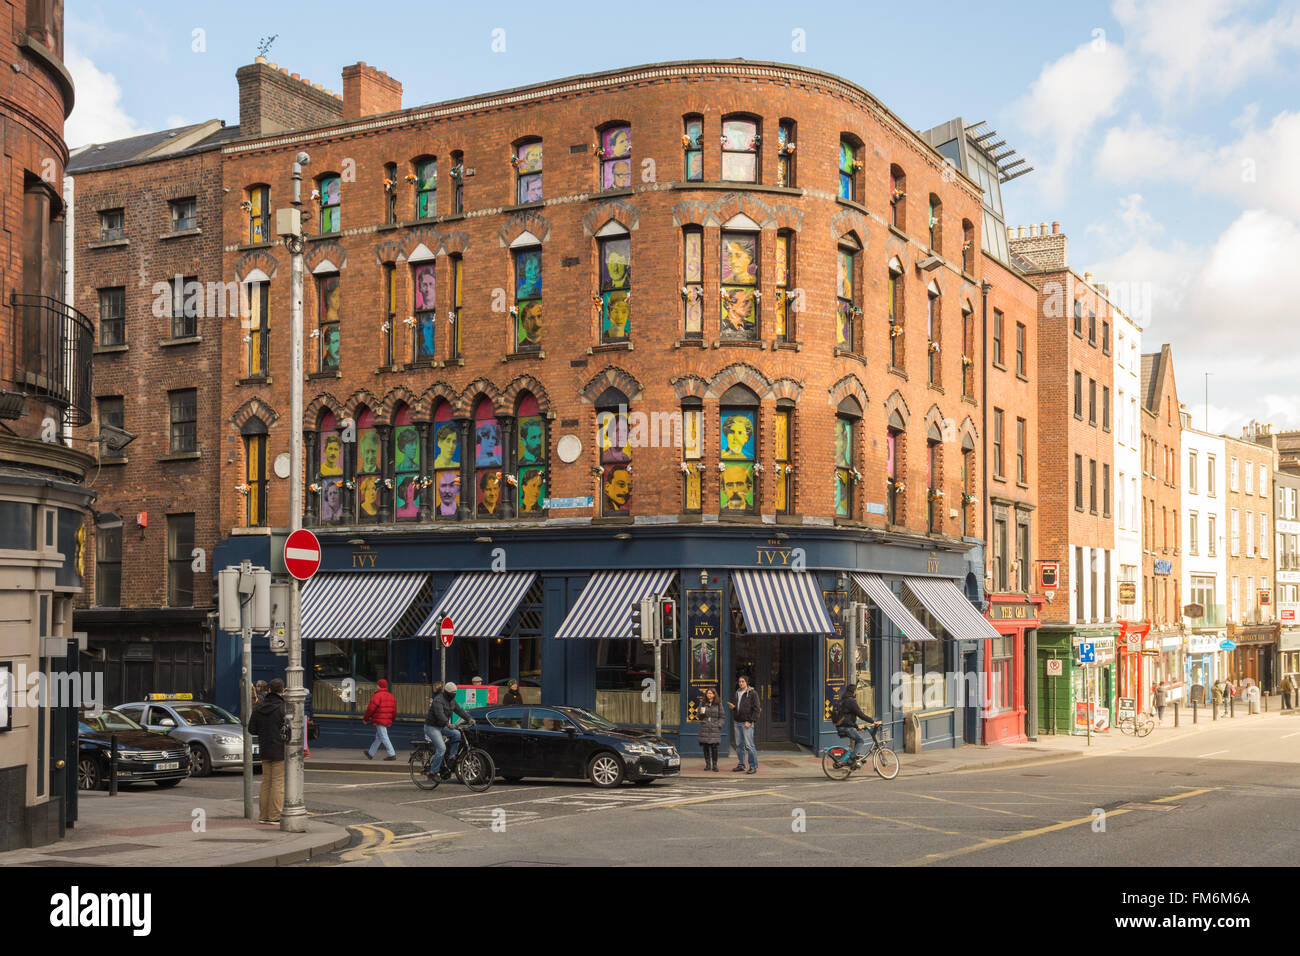 1916 CENTENARIO - Le immagini colorate di persone coinvolte nel 1916 in aumento in Irlanda in windows al di sopra della barra di Edera, Dublino Foto Stock